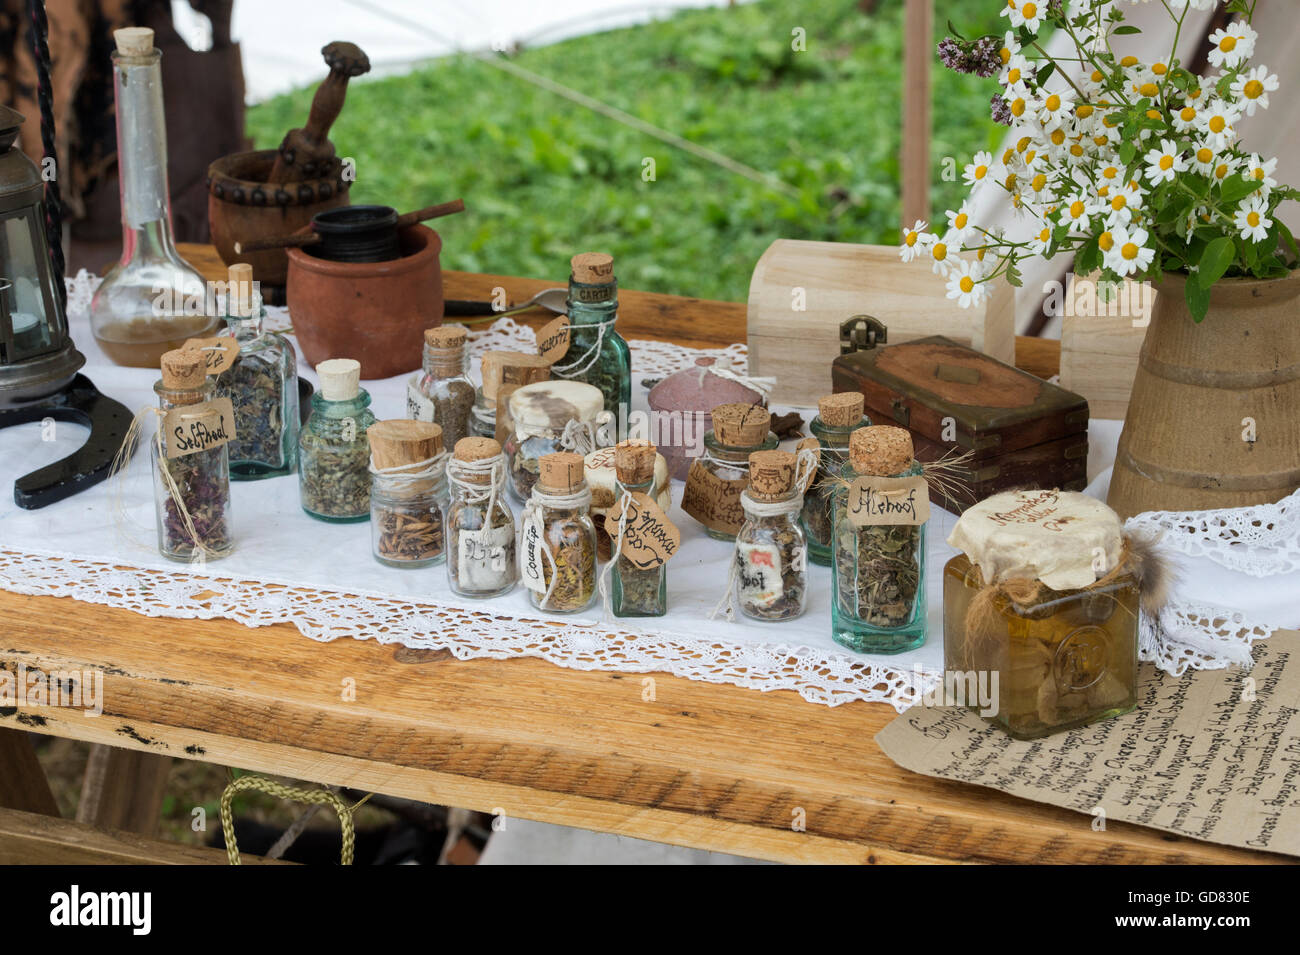 L'herboriste table avec bouteilles d'herbes fraîches à lors de la fête médiévale 2016 Tewkesbury, Gloucestershire, Angleterre. Banque D'Images